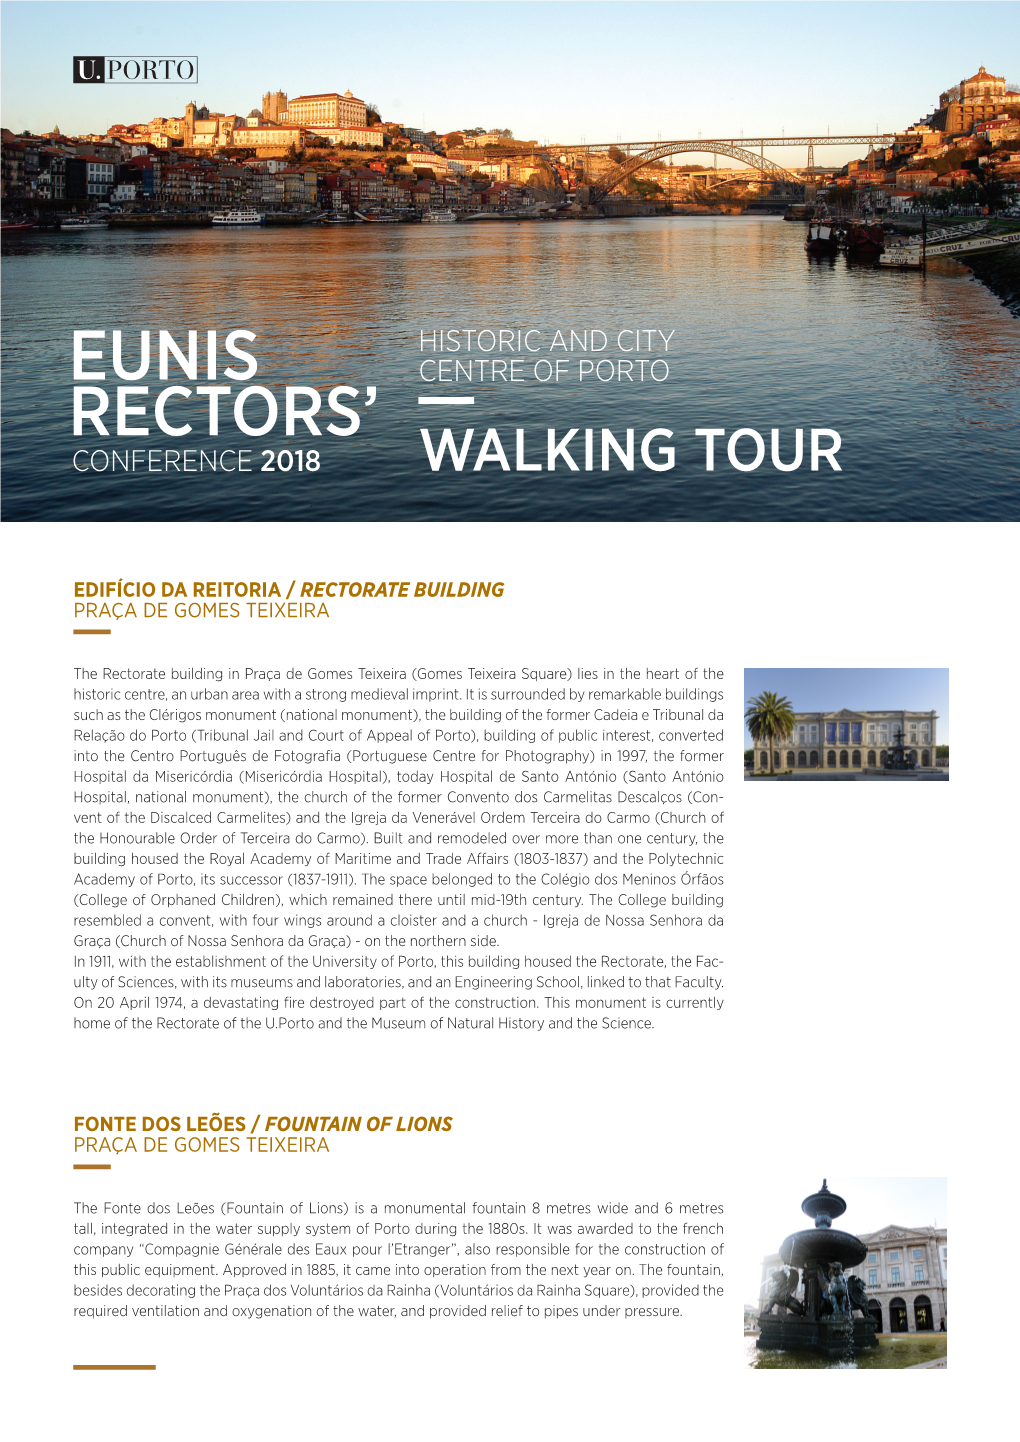 EUNIS 2018 Rectors' Conference Walking Tour